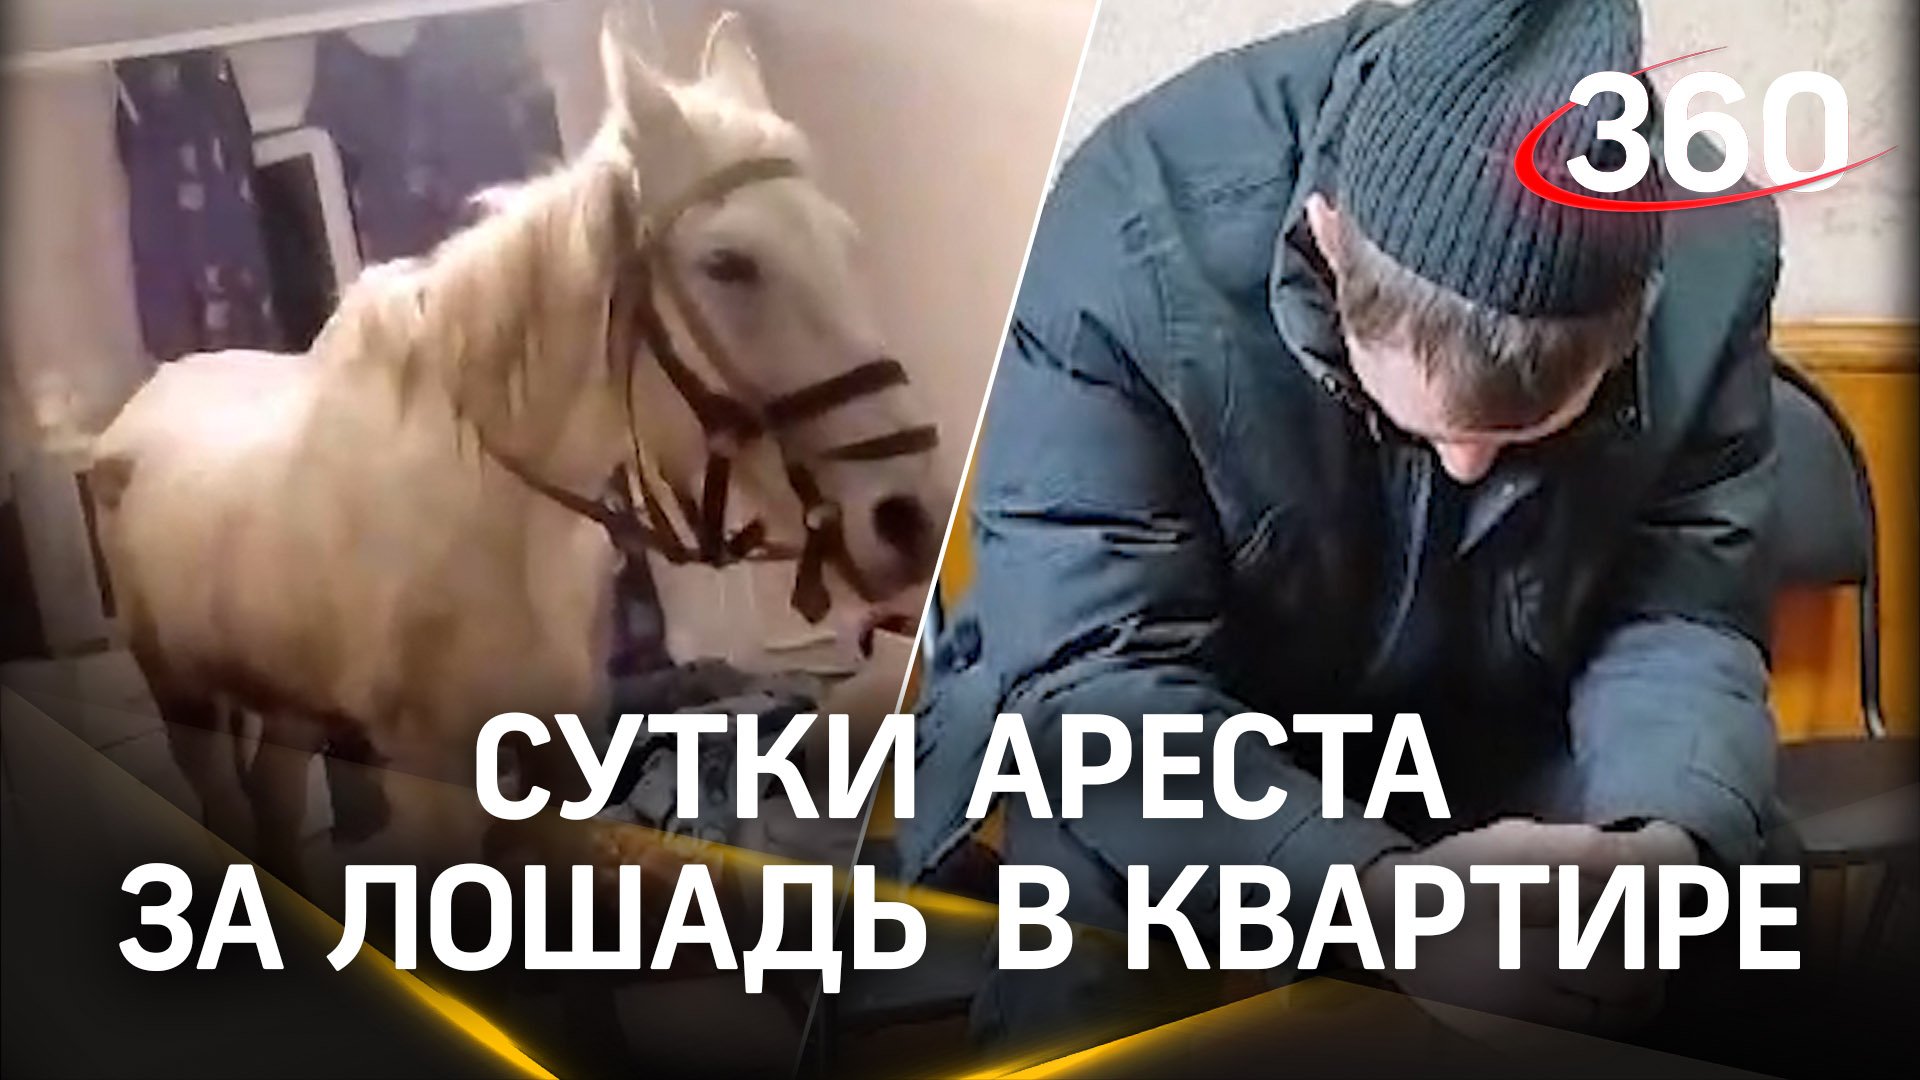 Сутки ареста получил житель Кузбасса: в подарок жене на 8 Марта привёл в квартиру лошадь